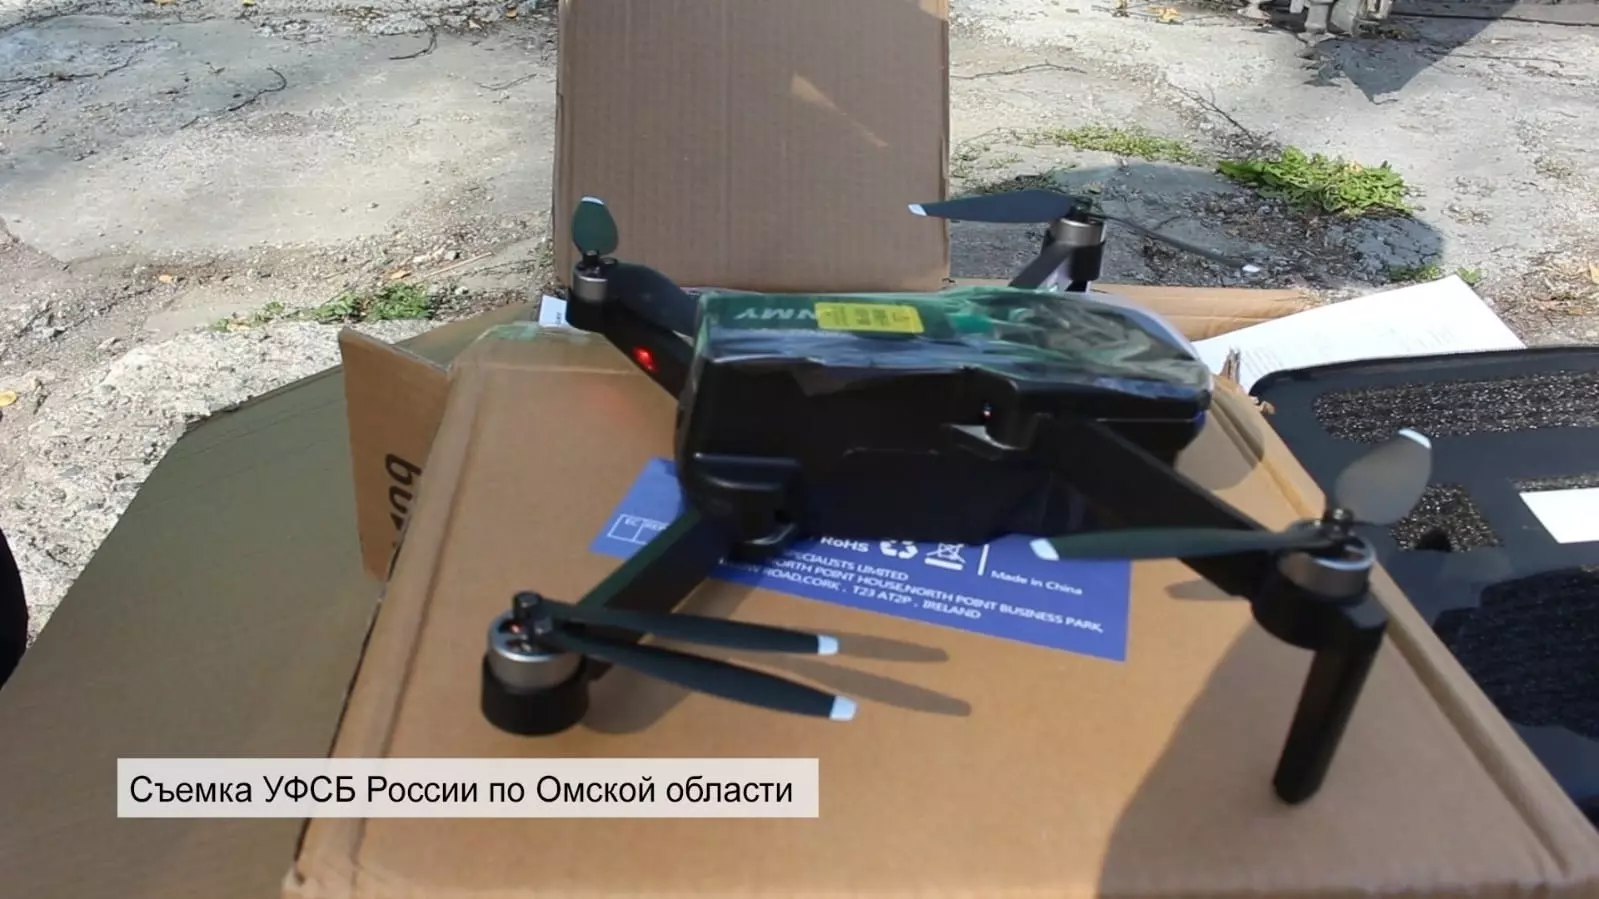 Омские таможенники изъяли тысячу дронов при попытке провезти их через границу